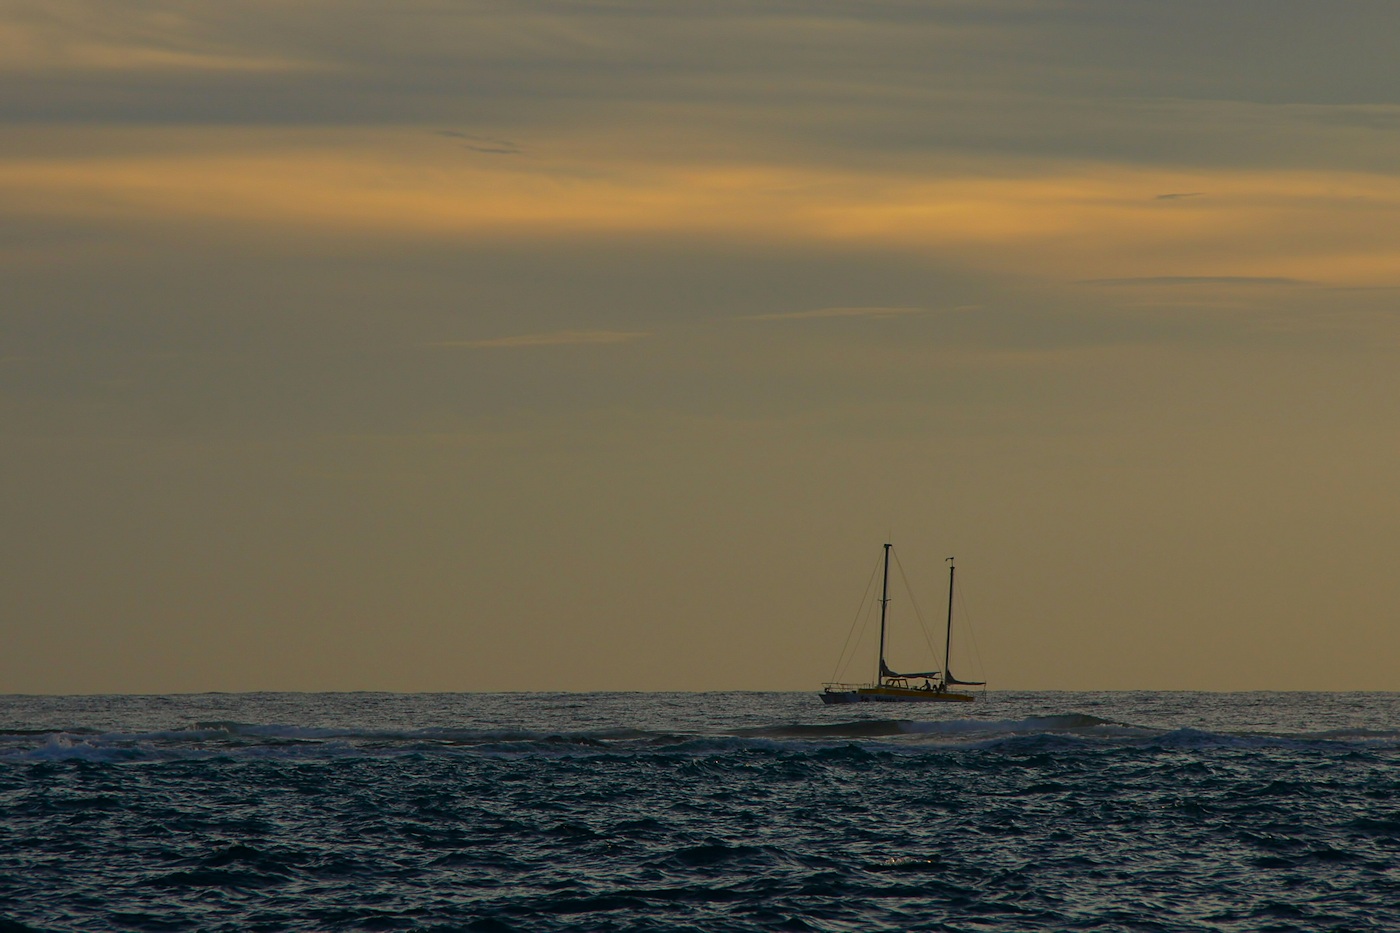 Sailboat making way at sunset